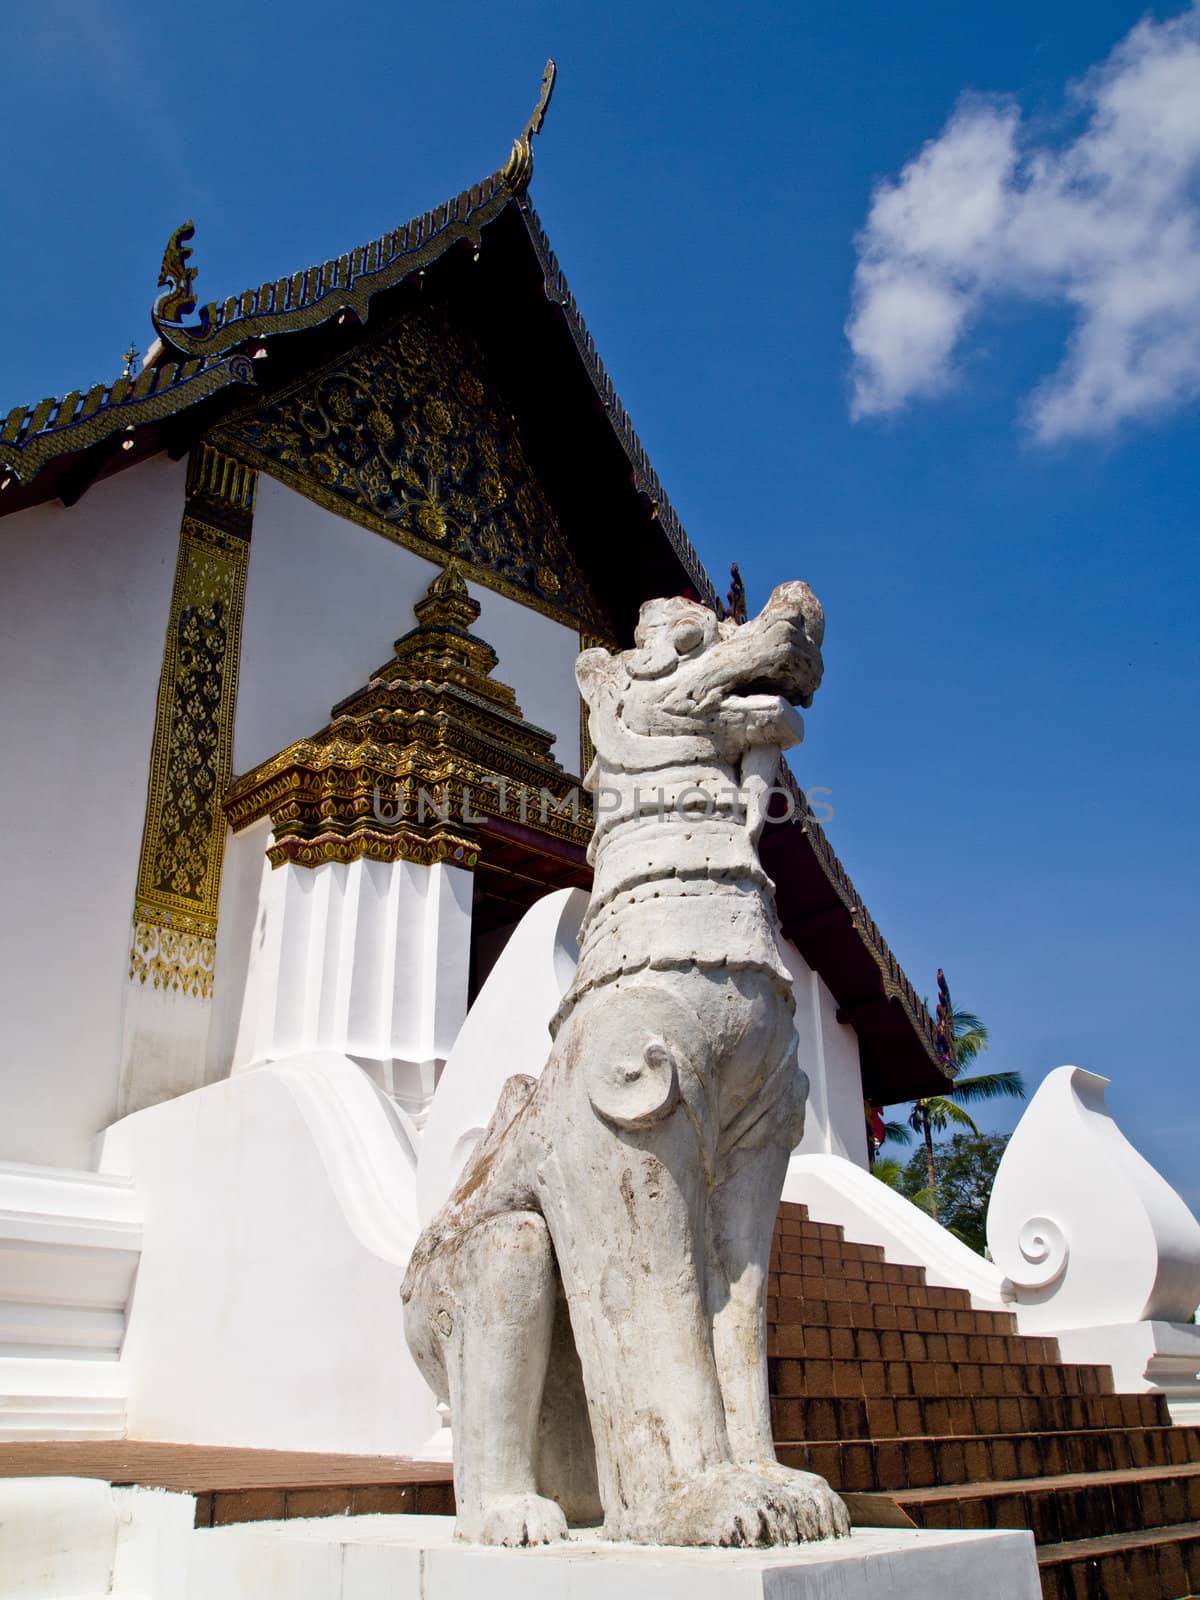 Lanna style temple which is in Wat Pumin (Nan-Thailand) by gjeerawut